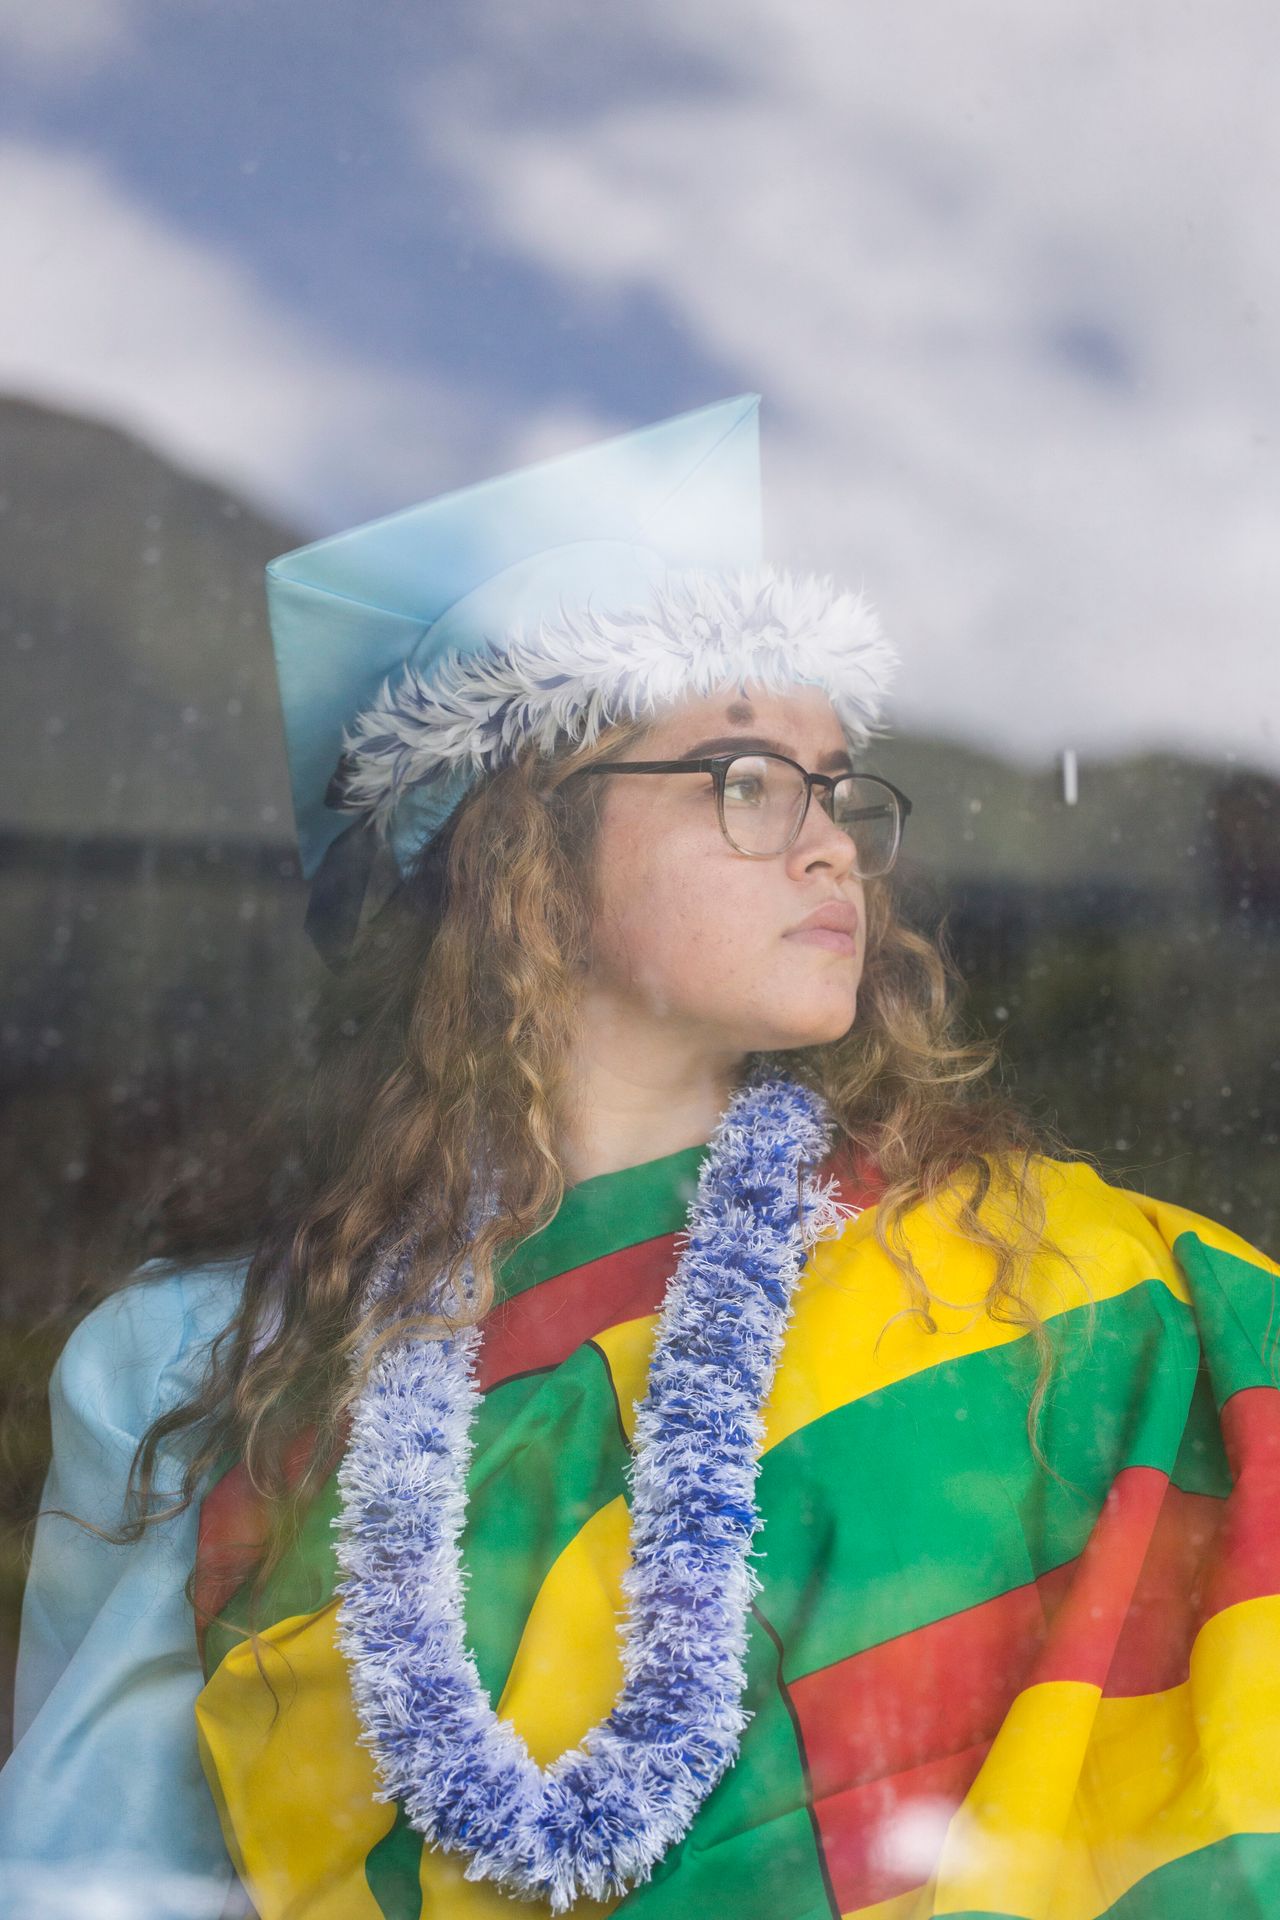 Kealoha Charles, a Kailua High School graduate, was planning to wear the Kānaka Maoli flag, or native Hawaiian flag.